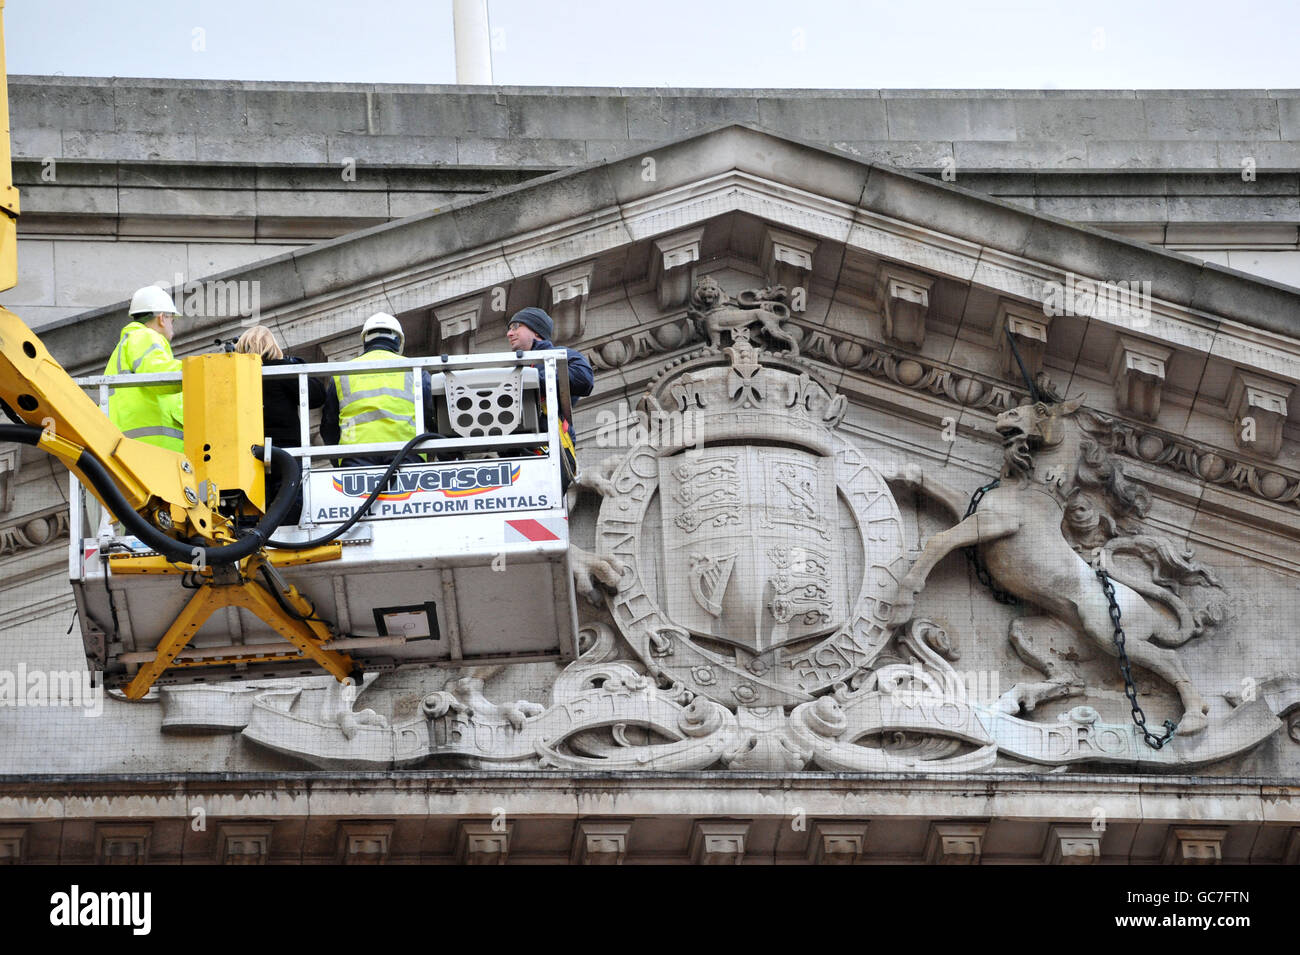 Entretien du palais de Buckingham.Le personnel de Buckingham Palace utilise une grue mobile pour effectuer des contrôles d'entretien de routine sur le bâtiment. Banque D'Images